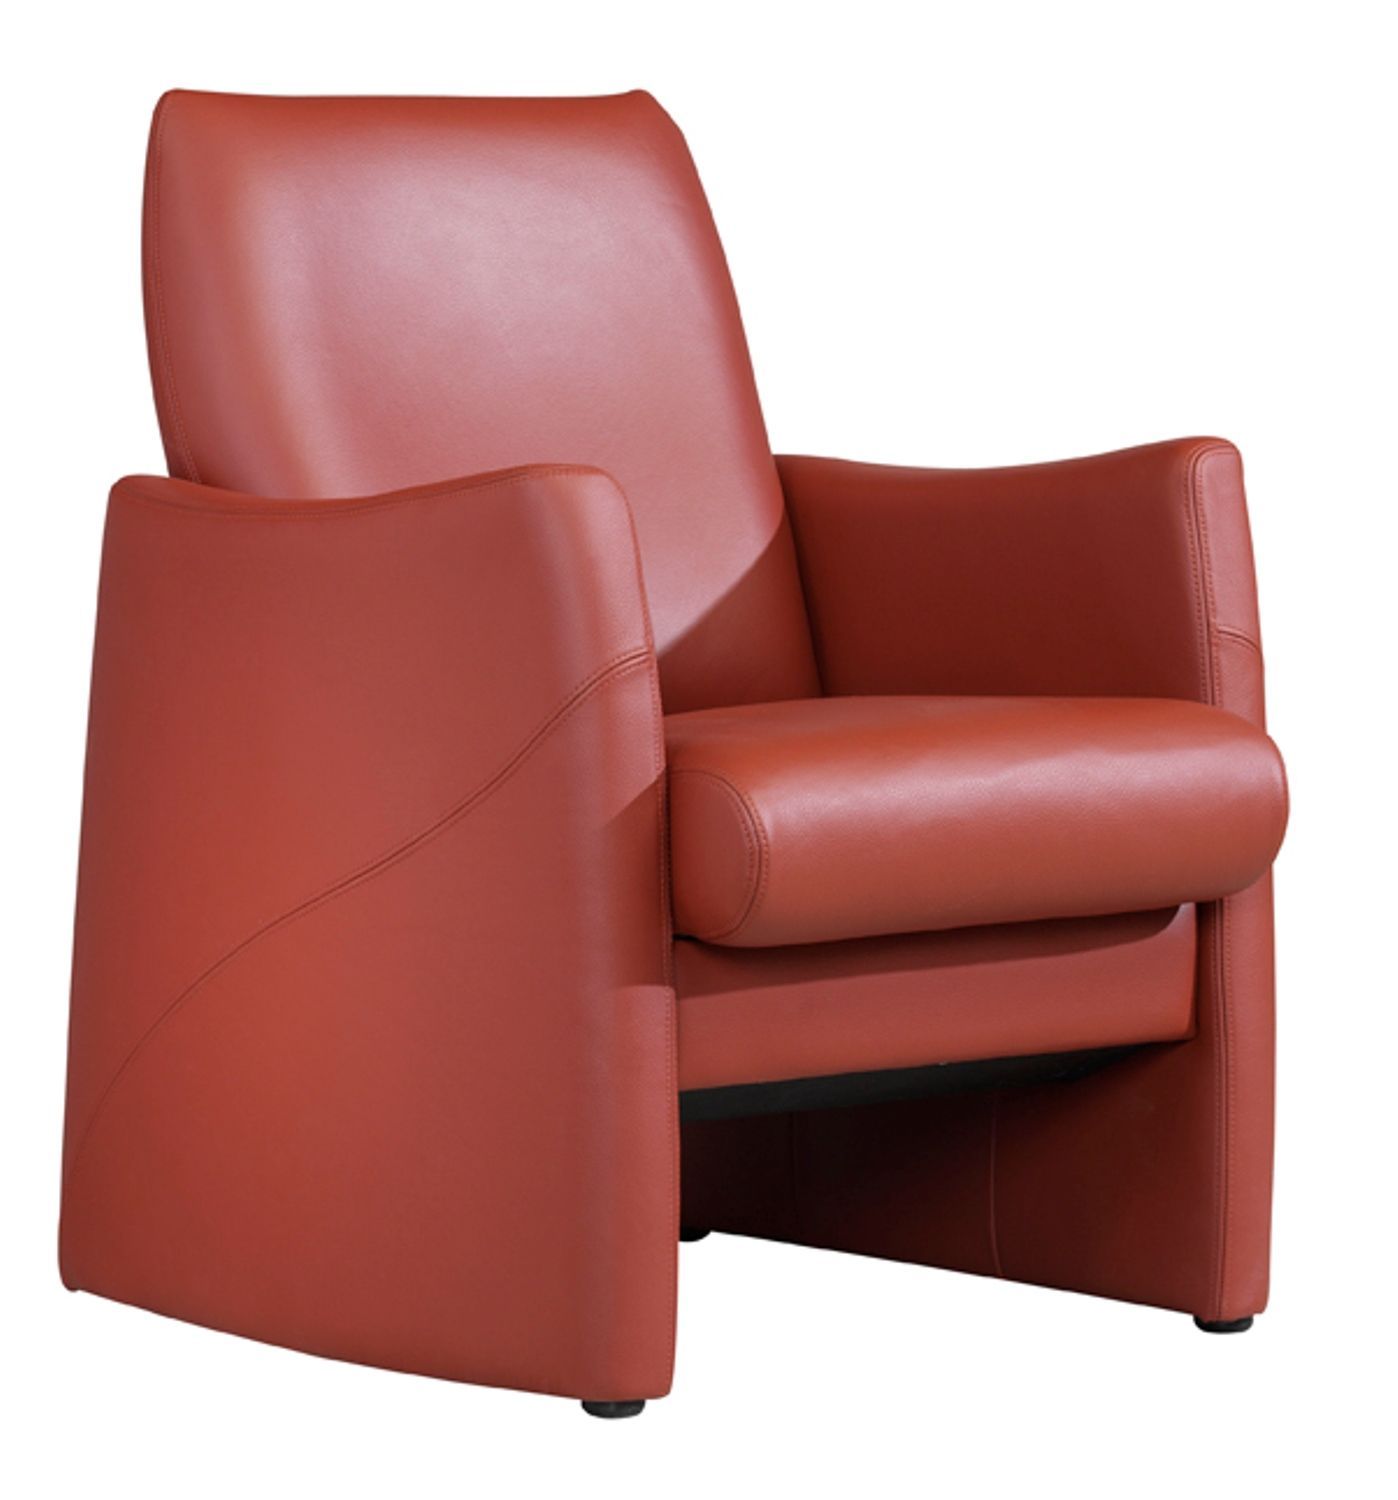 Productafbeelding van Comfirst fauteuil Bern